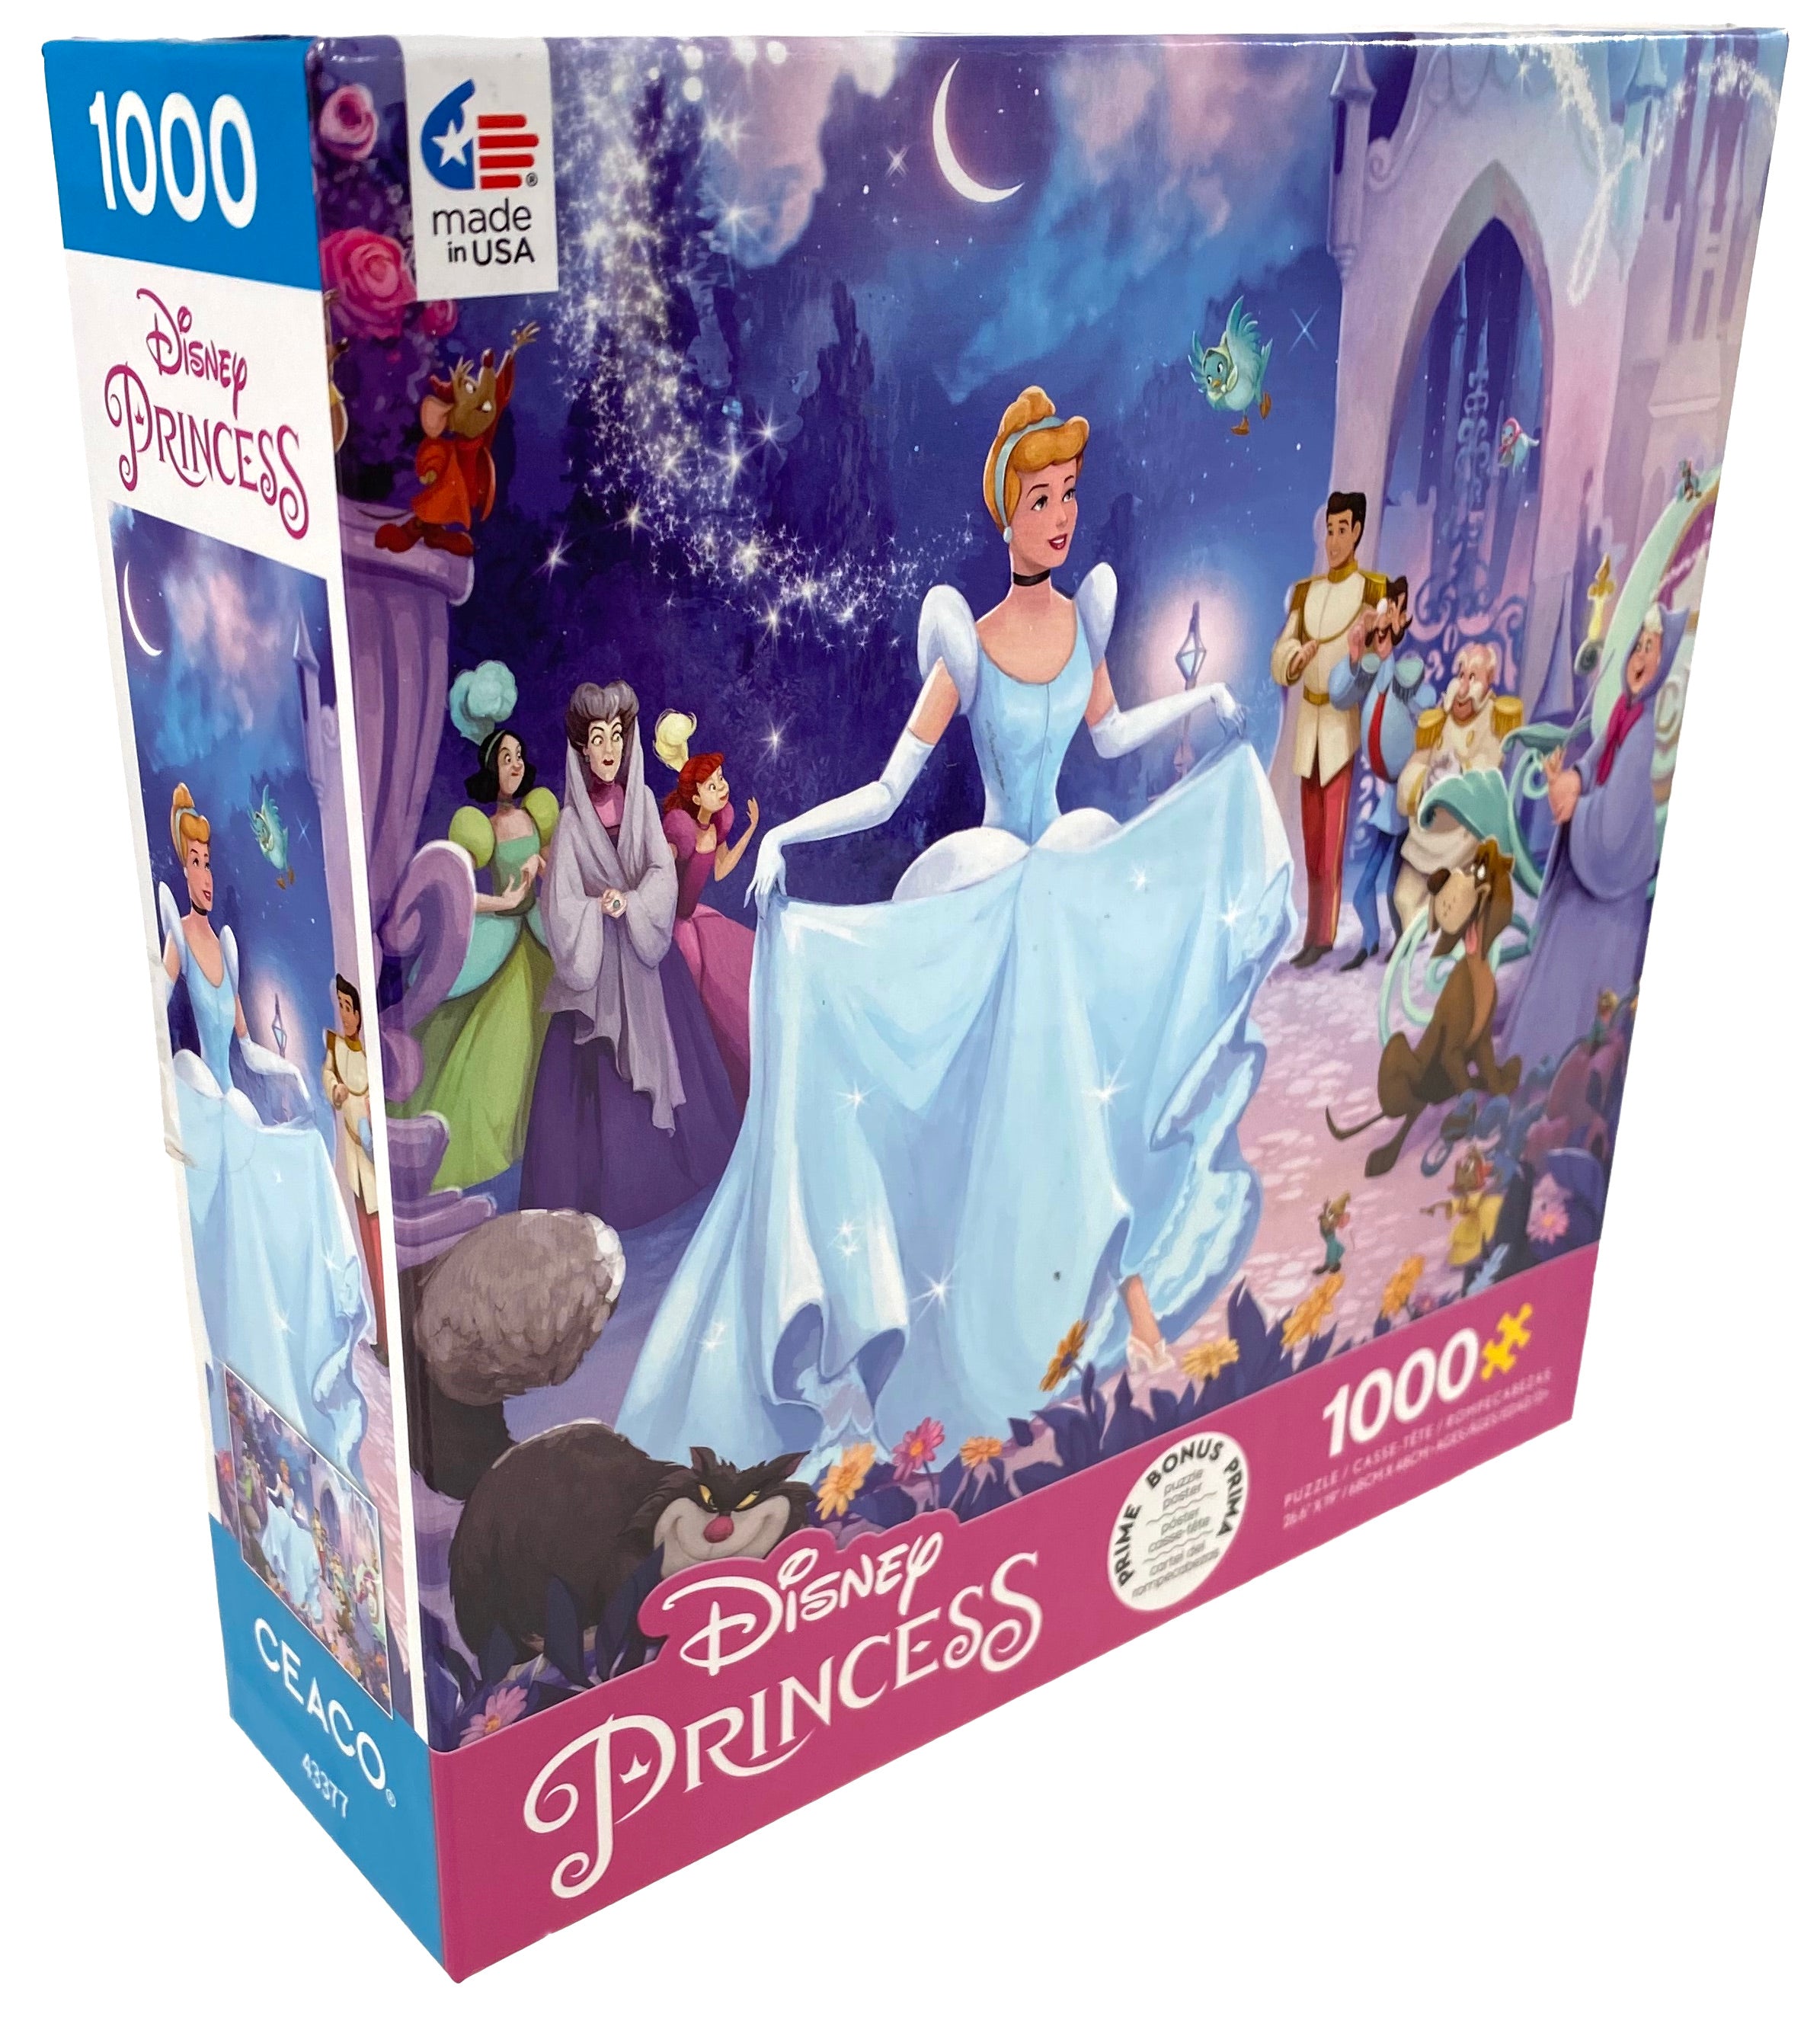 Cinderella - Puzzle 2000 pièces - puzzle